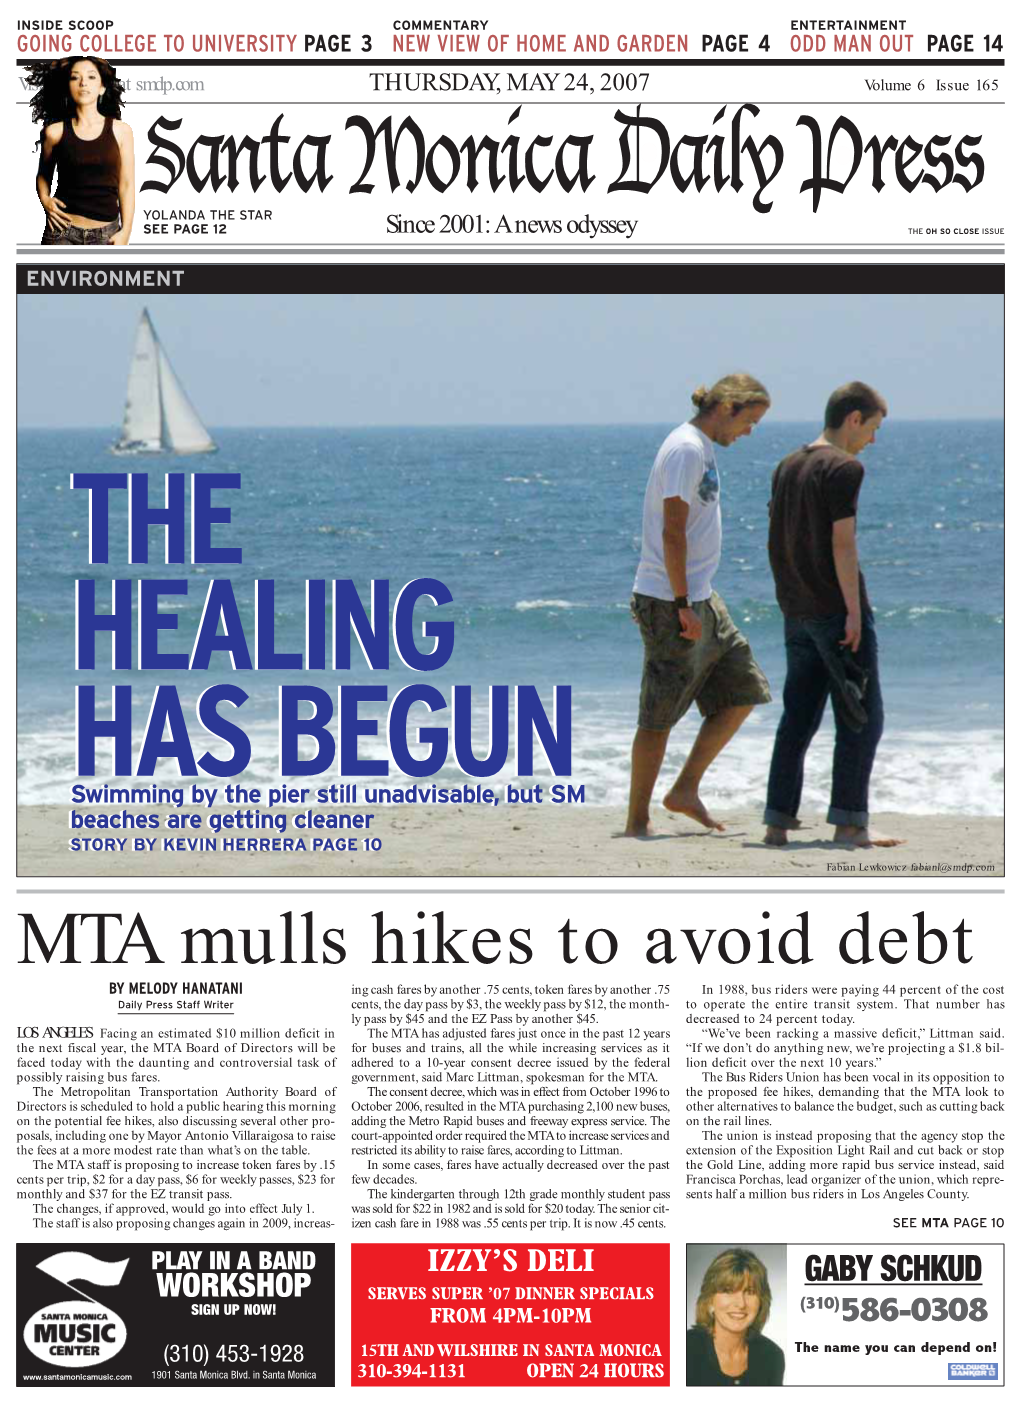 MTA Mulls Hikes to Avoid Debt